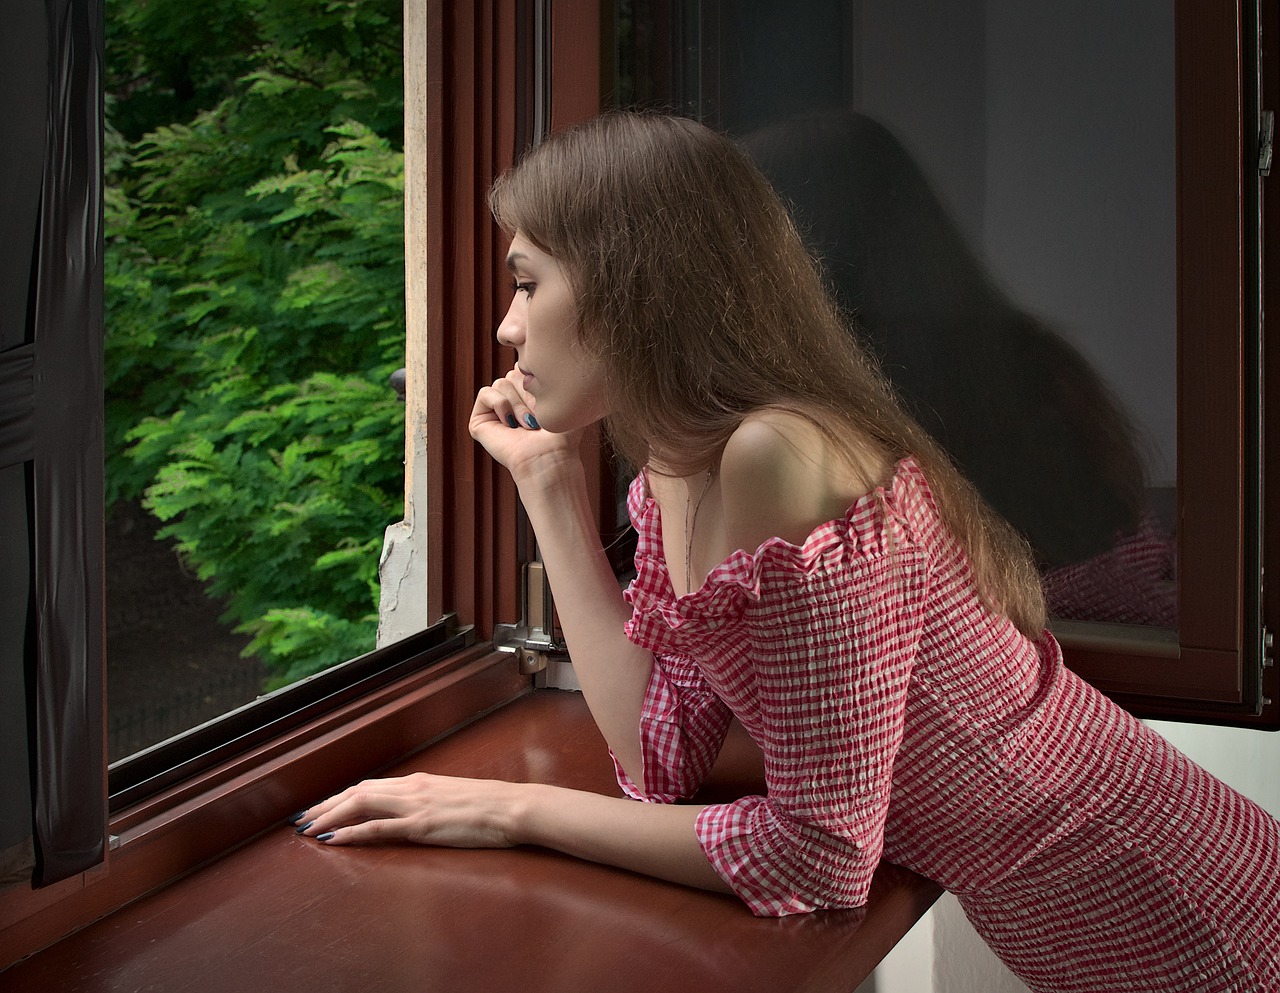 Jeune femme accoudée à la fenêtre | Source : Pixabay